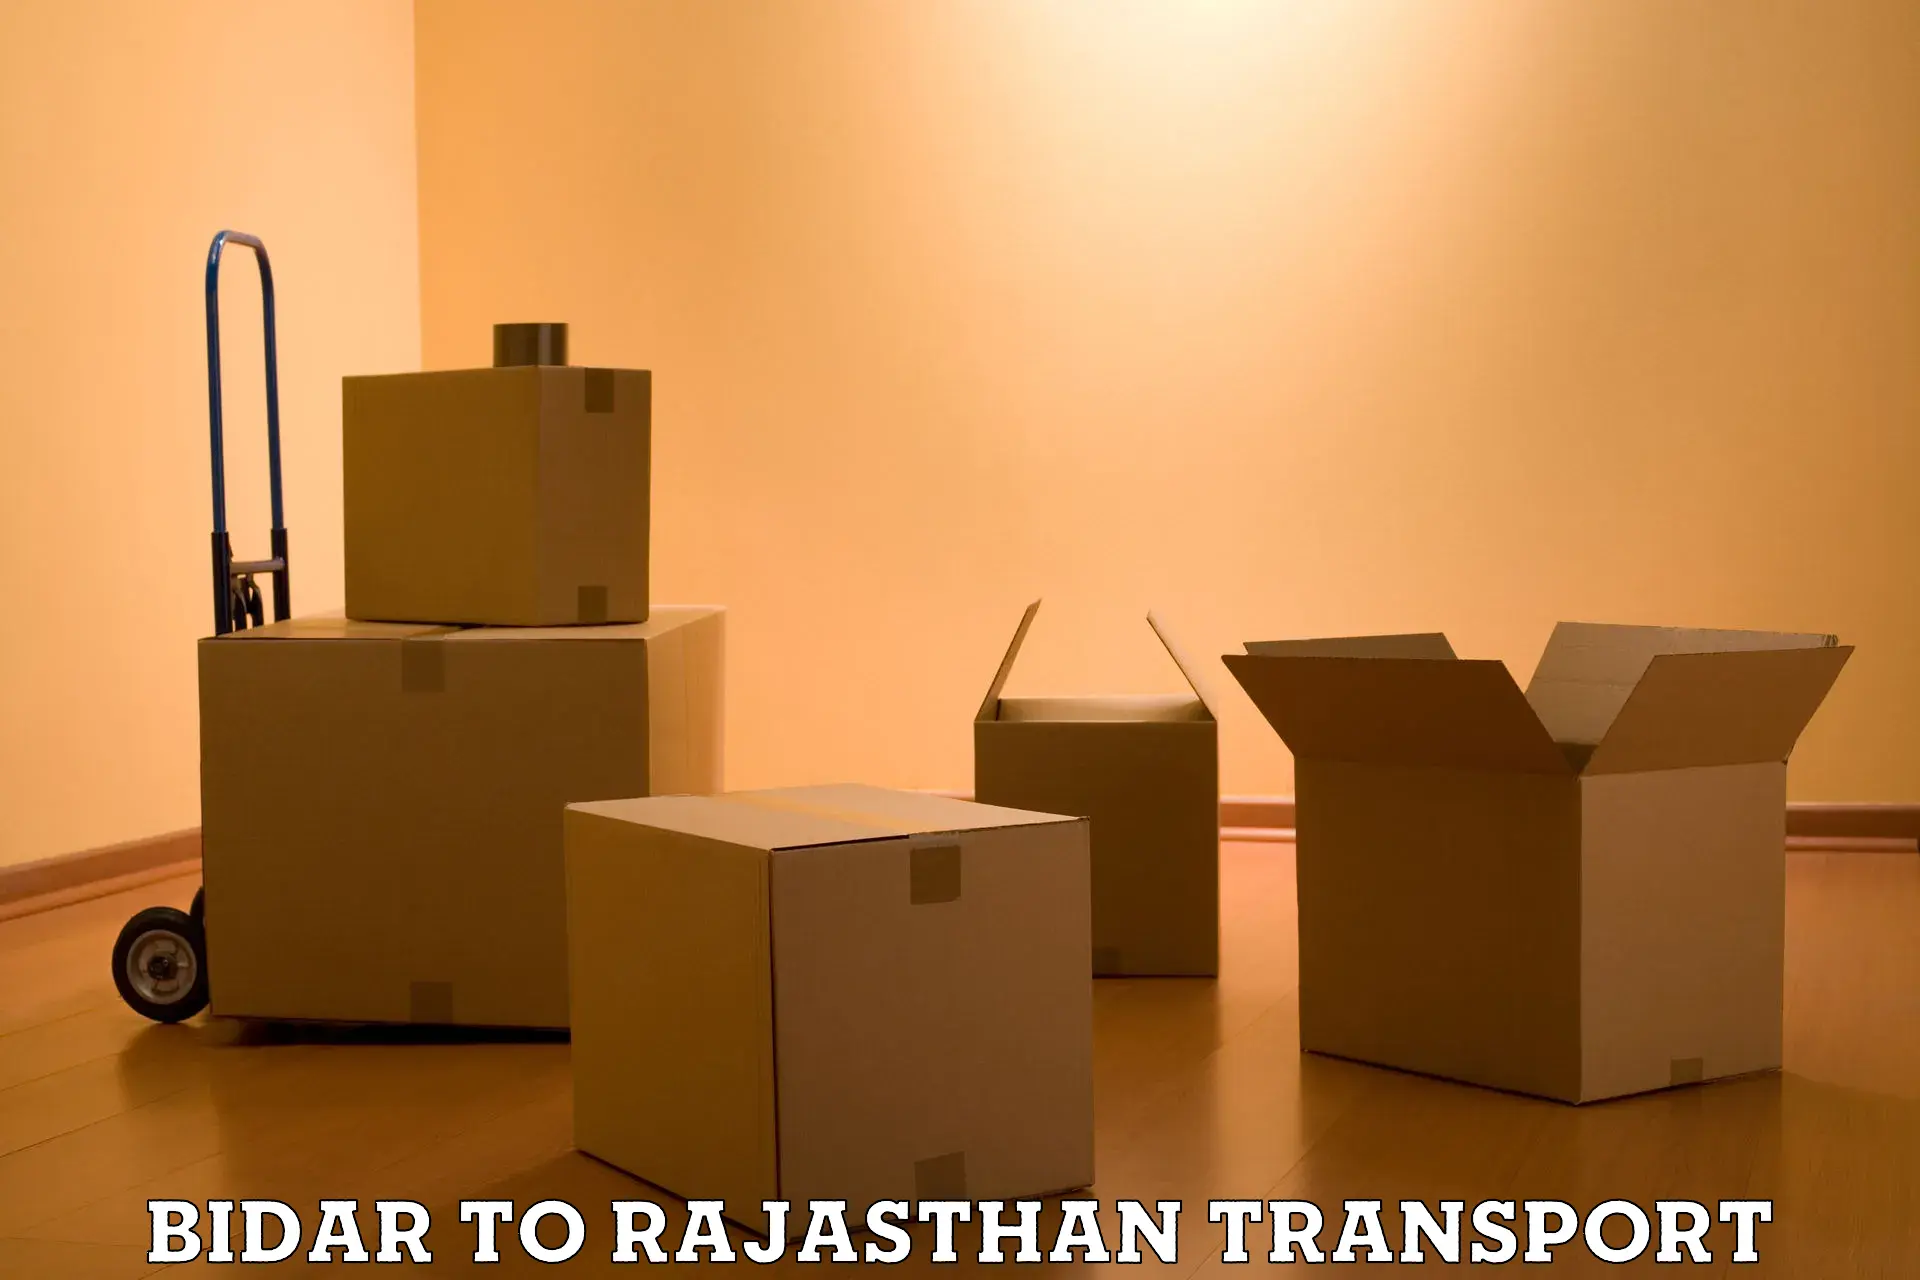 Commercial transport service Bidar to Pratapgarh Rajasthan